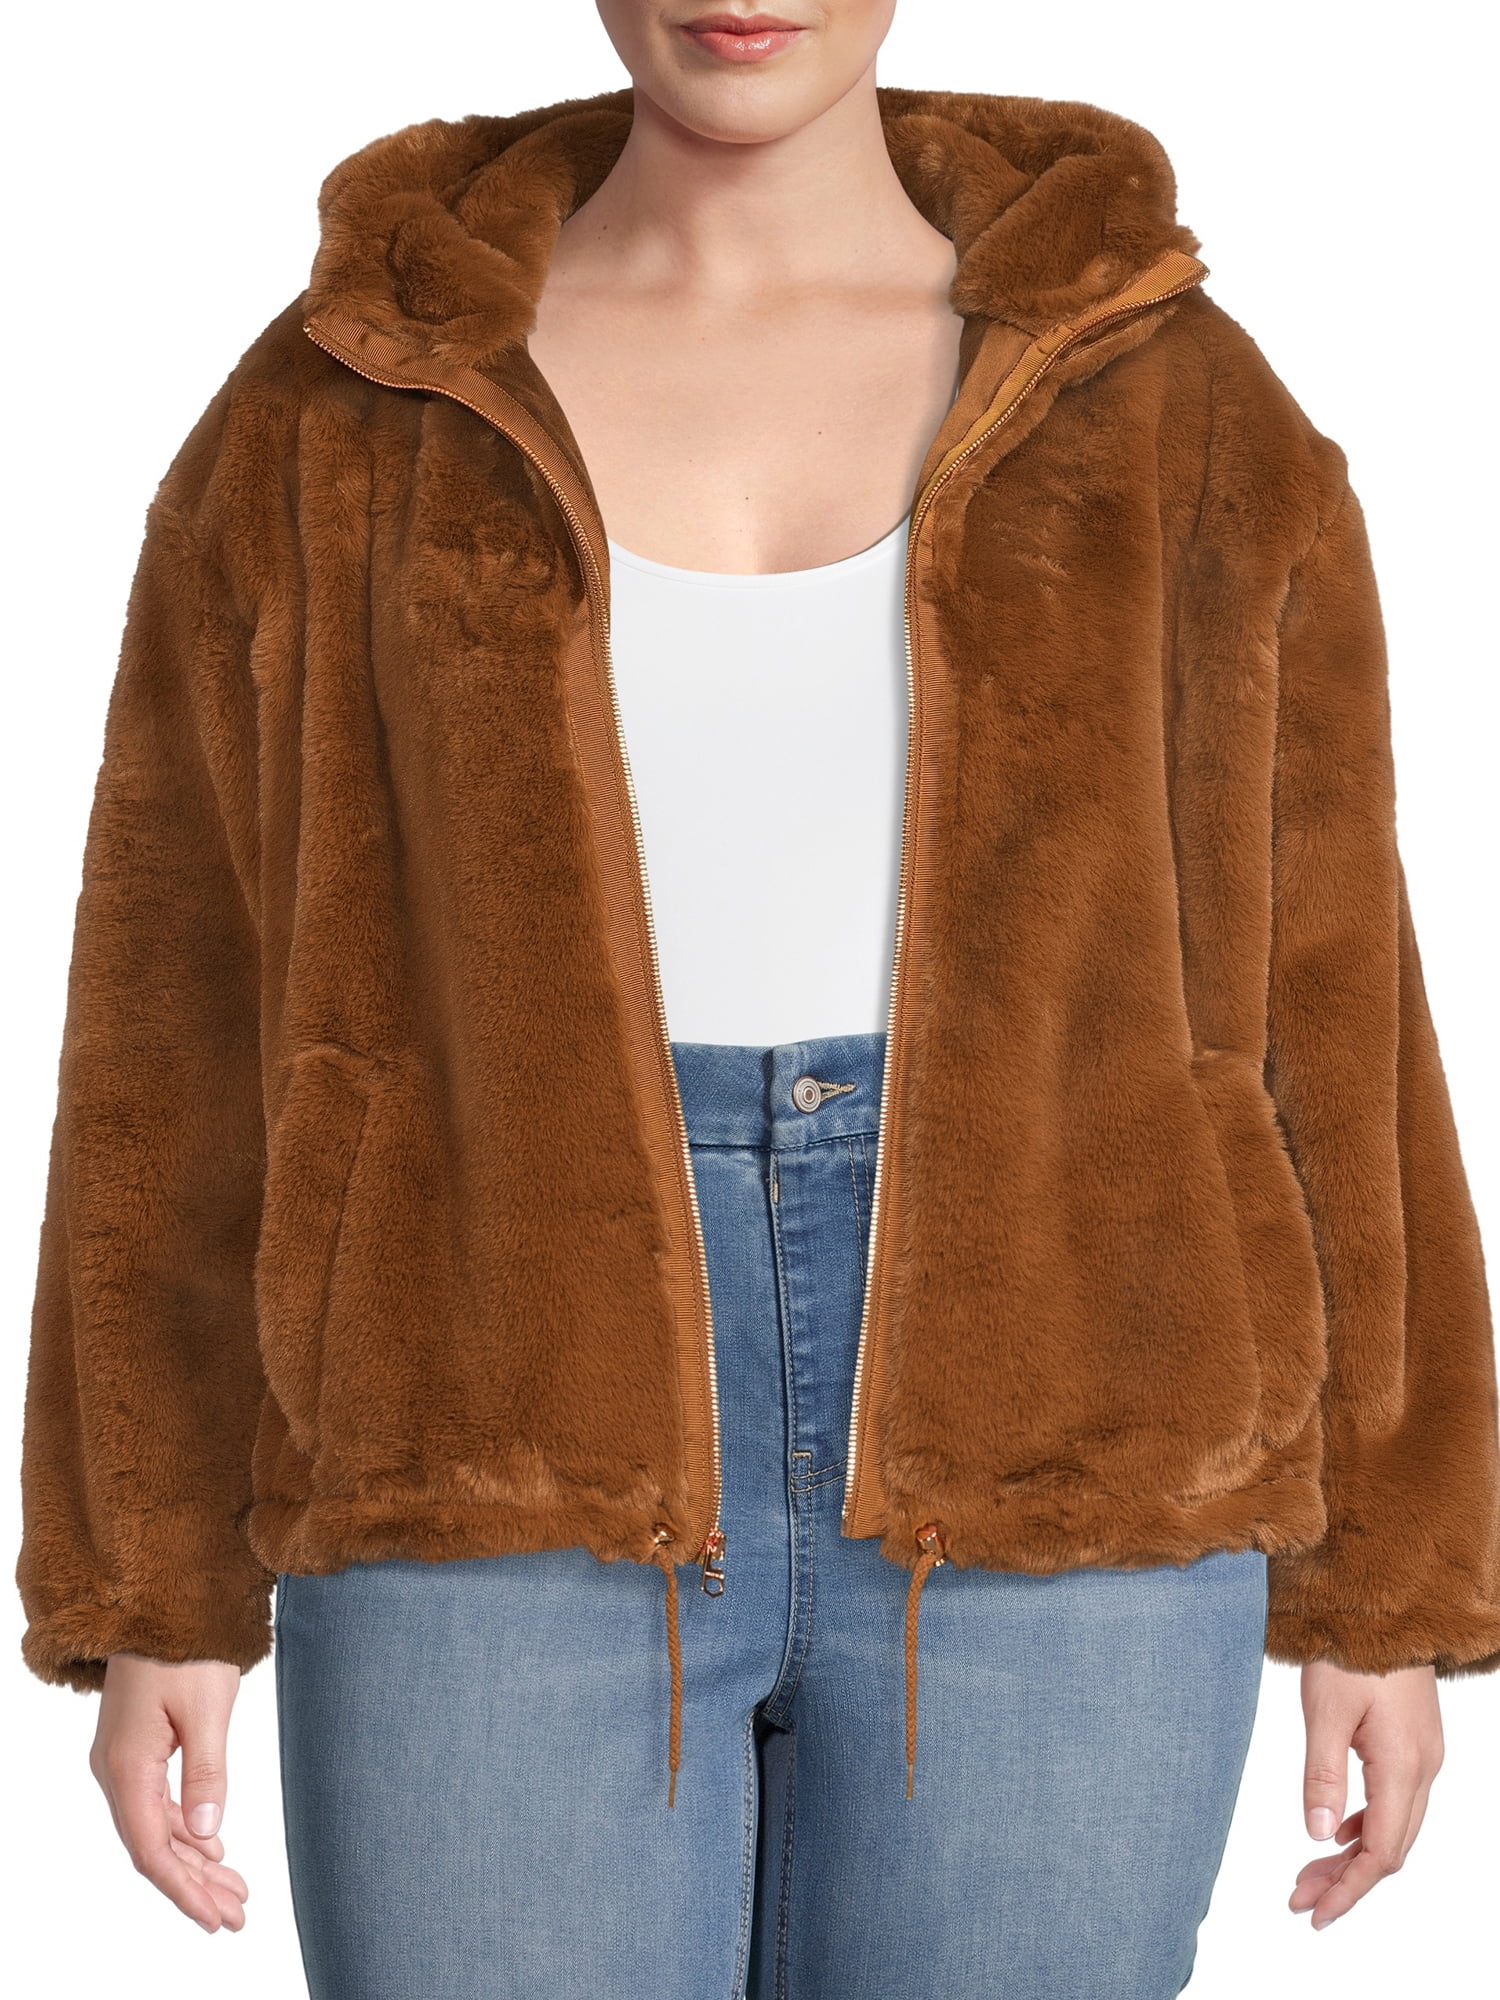 Lucky Brand Women's Plus Size Faux Fur Hooded Jacket - Walmart.com